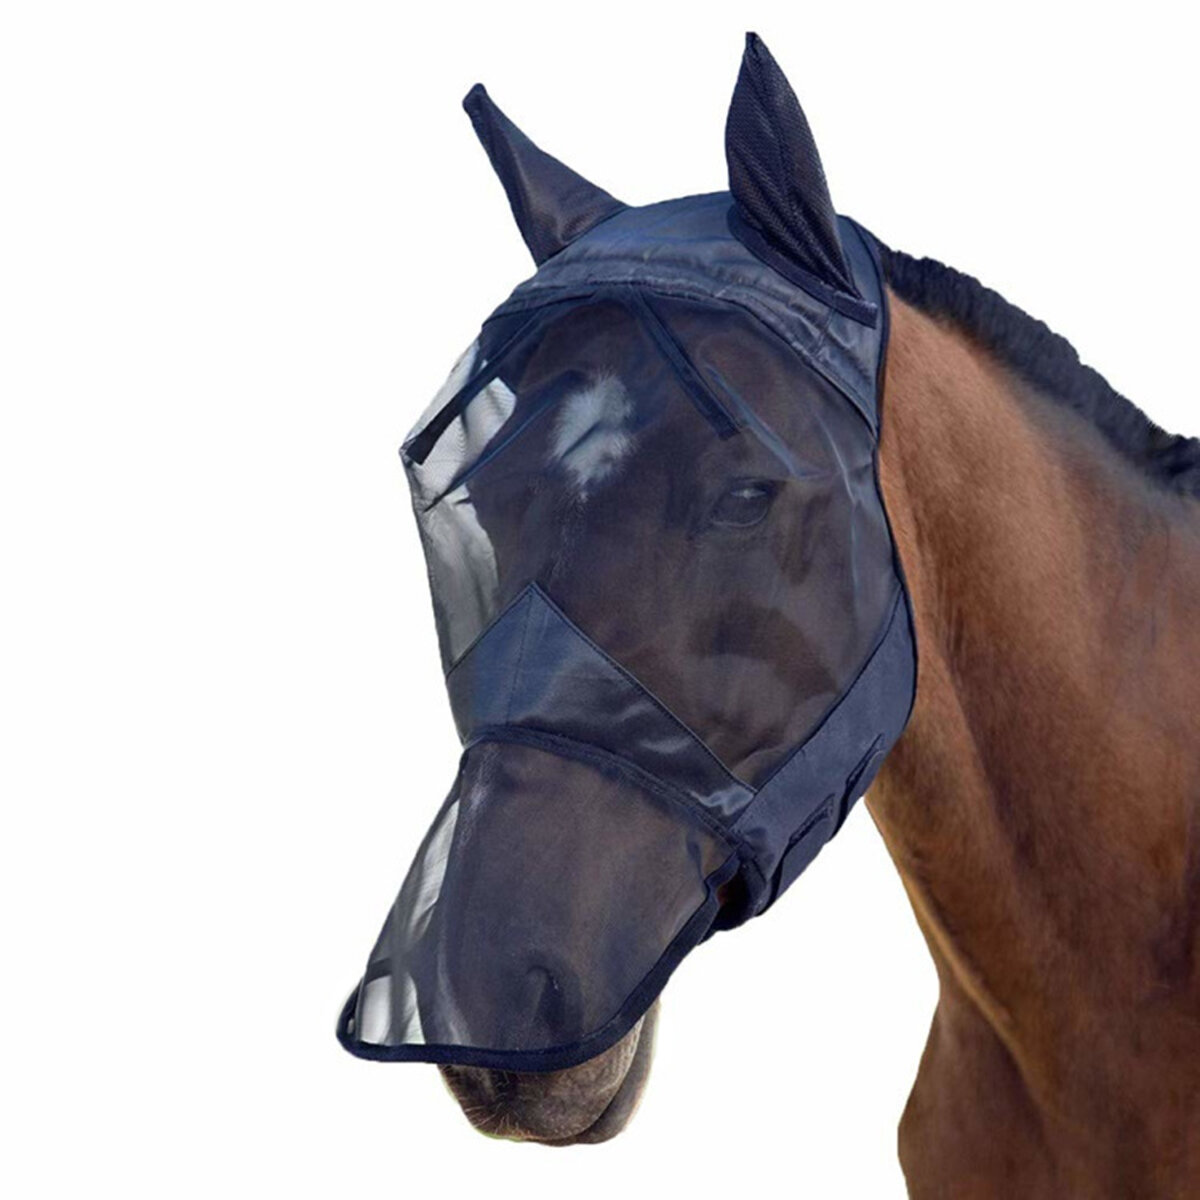 M / L / XL通気性のある馬のフライマスクメッシュ耳鼻フルフェイス馬具用 от Banggood WW